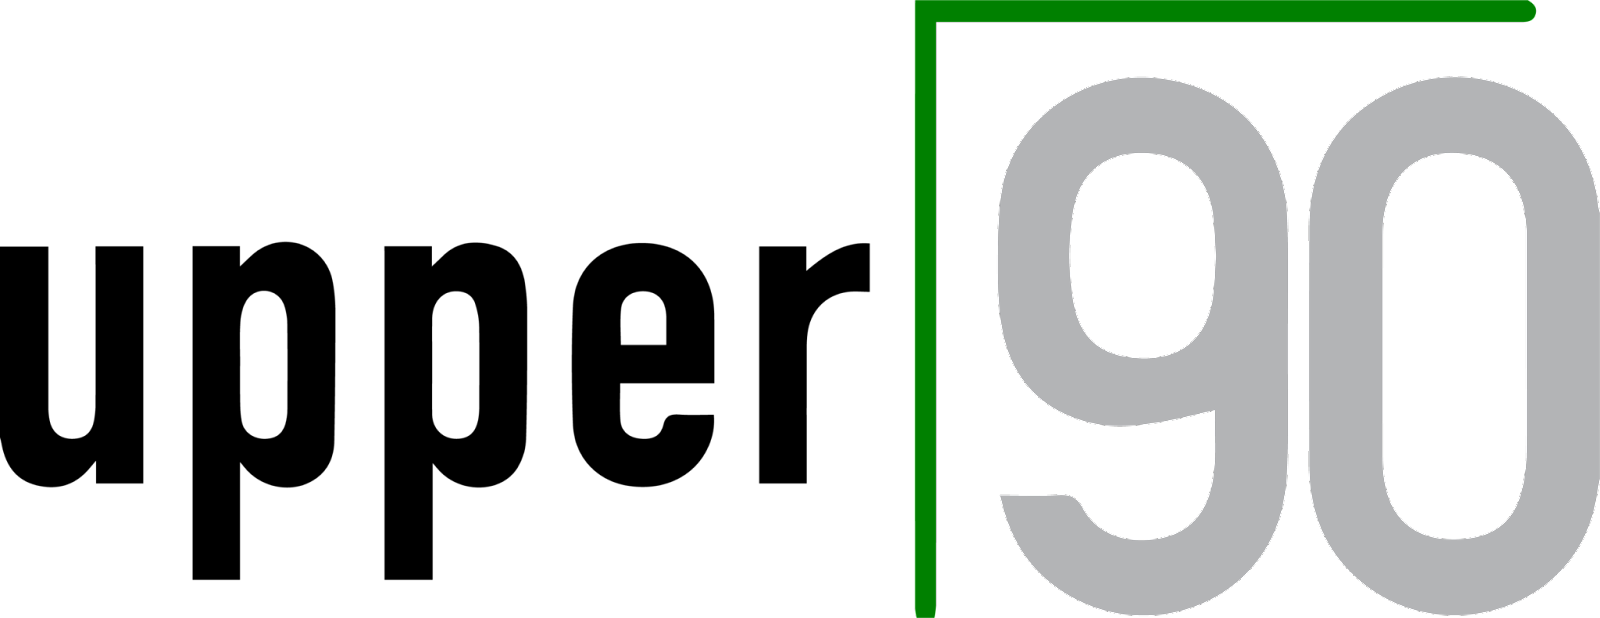 Upper90 logo